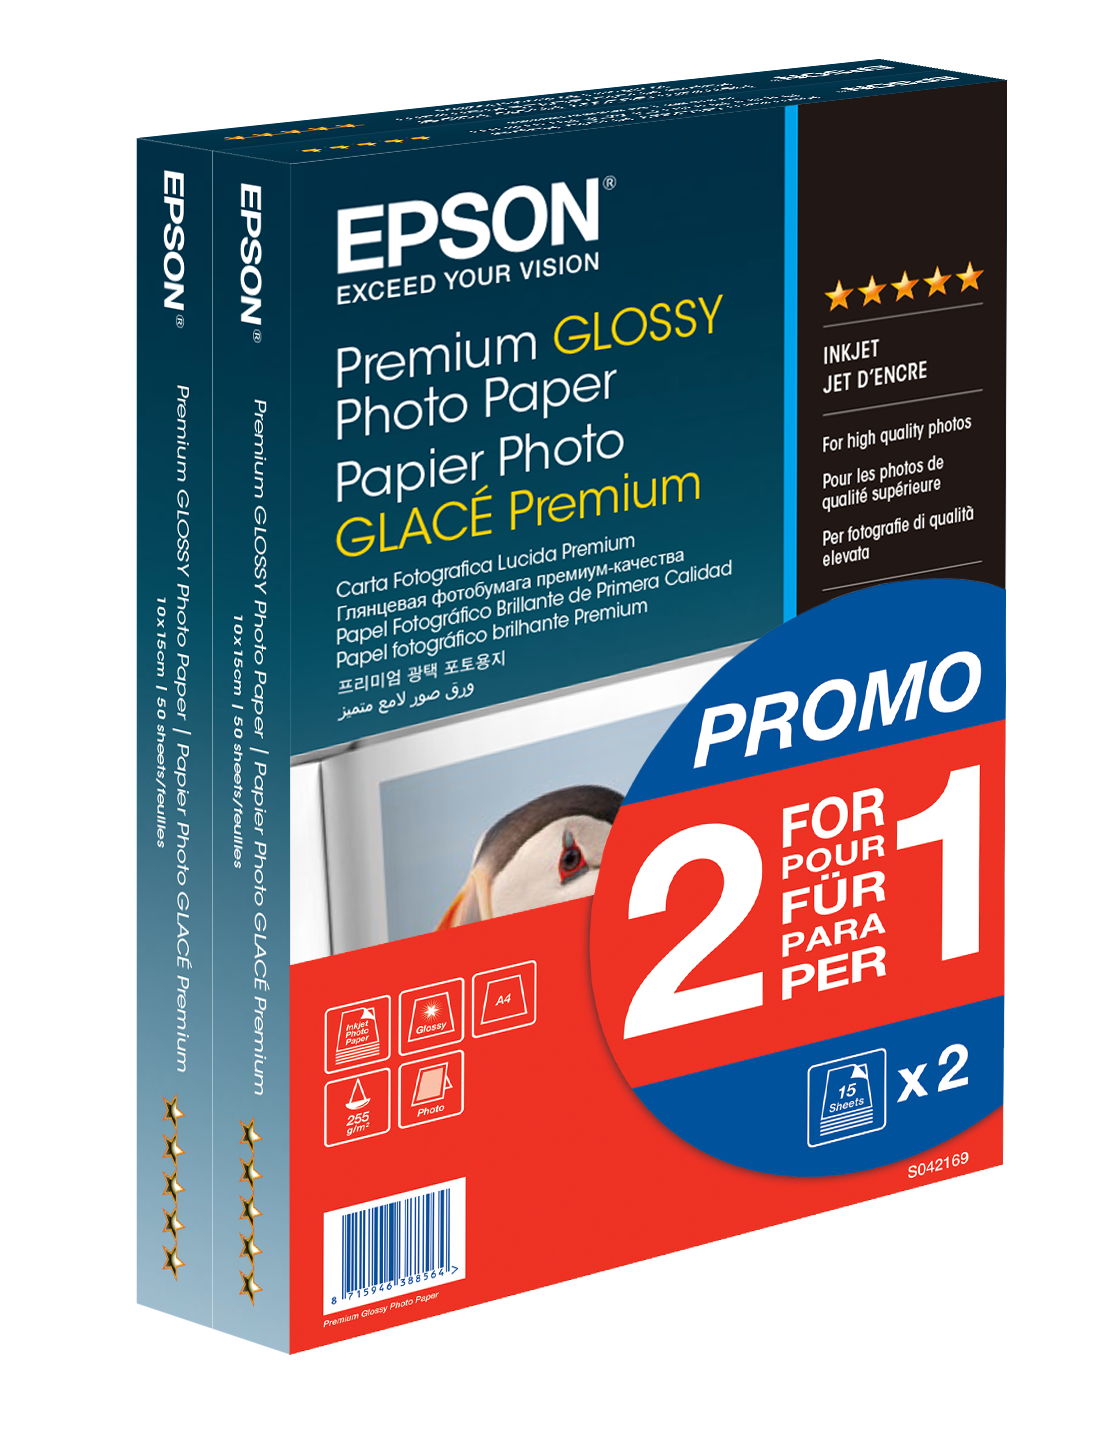 Epson WorkForce ET-3750 Impresora multifunción a color EcoTank,  inalámbrica, con súpertanque y escáner, copiadora y ethernet